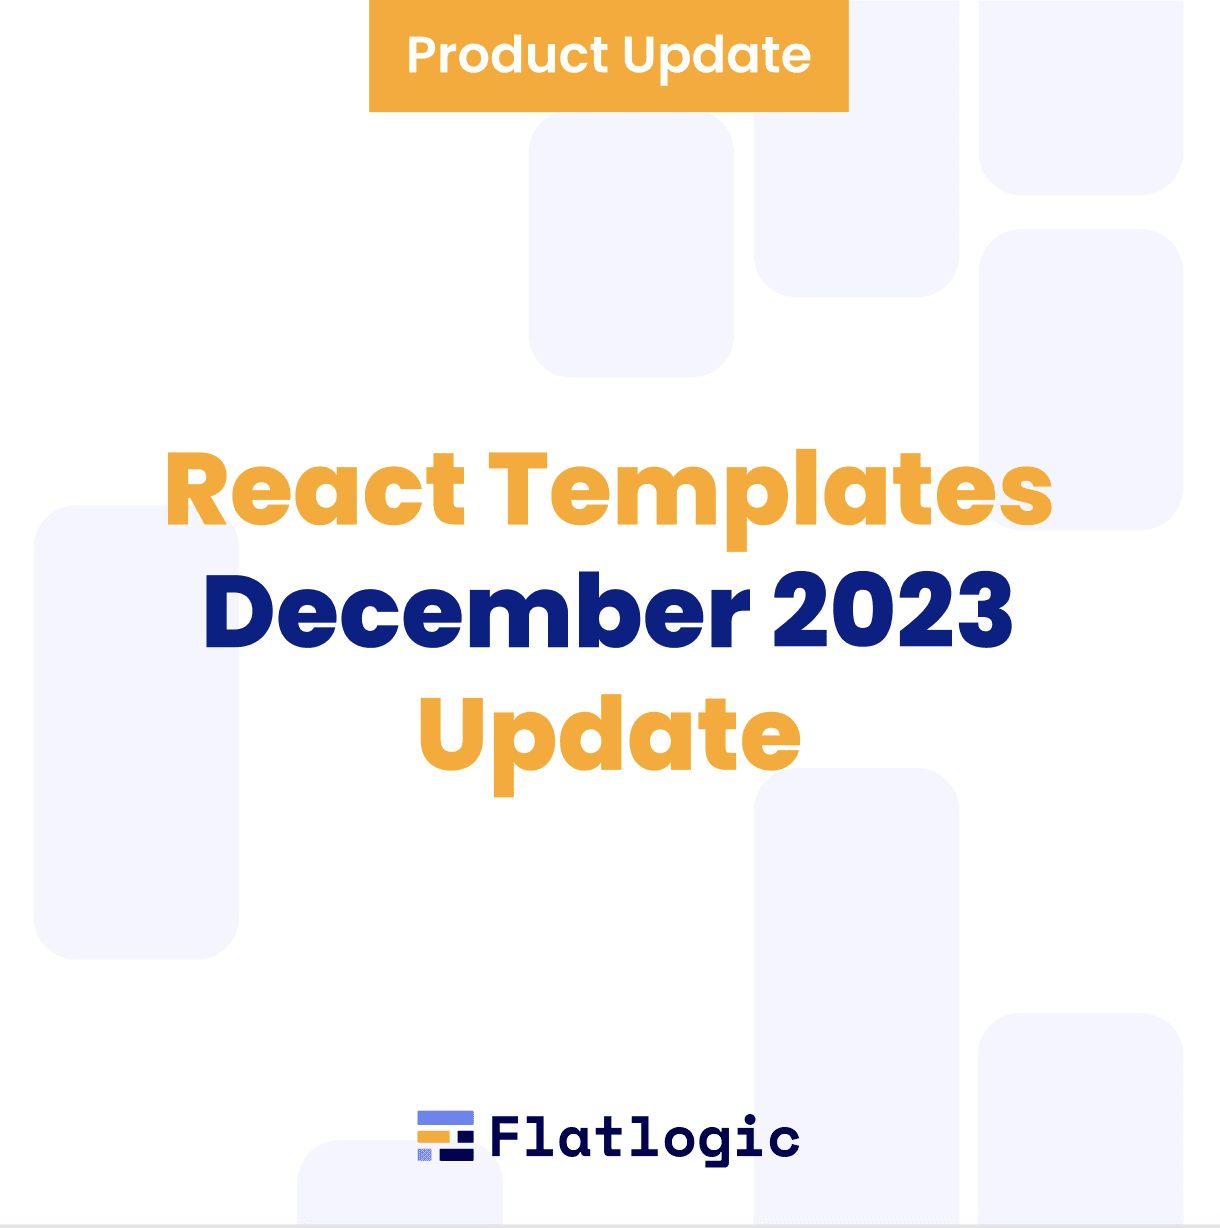 React templates December 2023 Update